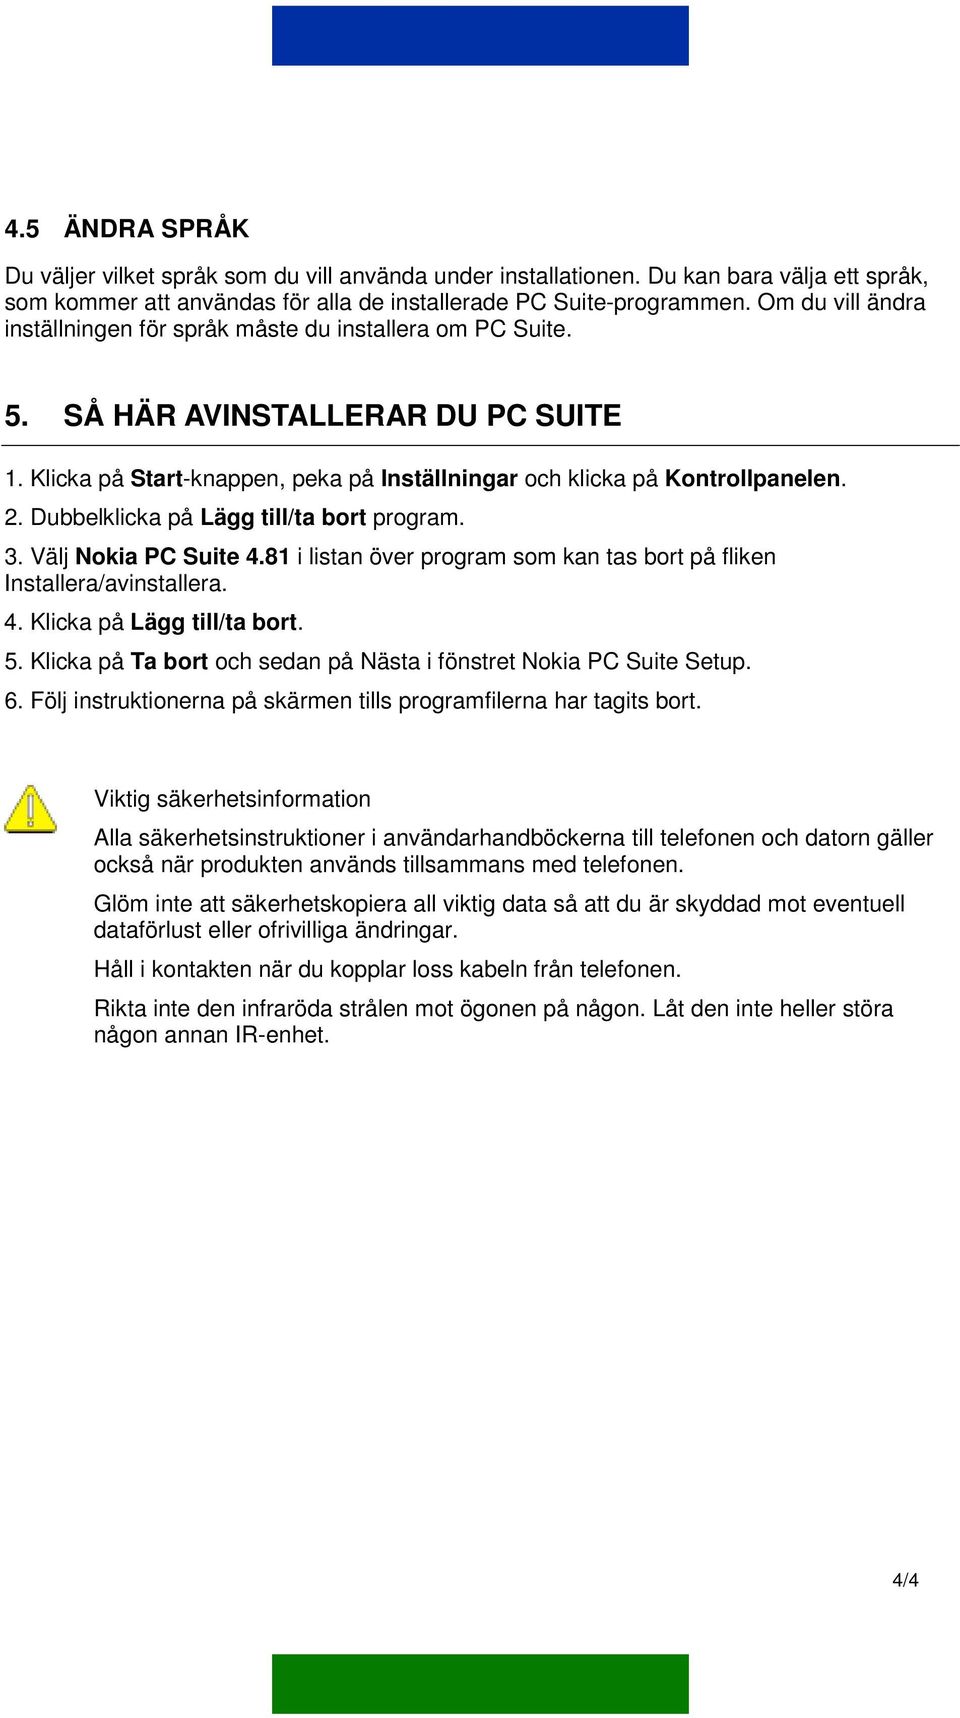 Dubbelklicka på Lägg till/ta bort program. 3. Välj Nokia PC Suite 4.81 i listan över program som kan tas bort på fliken Installera/avinstallera. 4. Klicka på Lägg till/ta bort. 5.